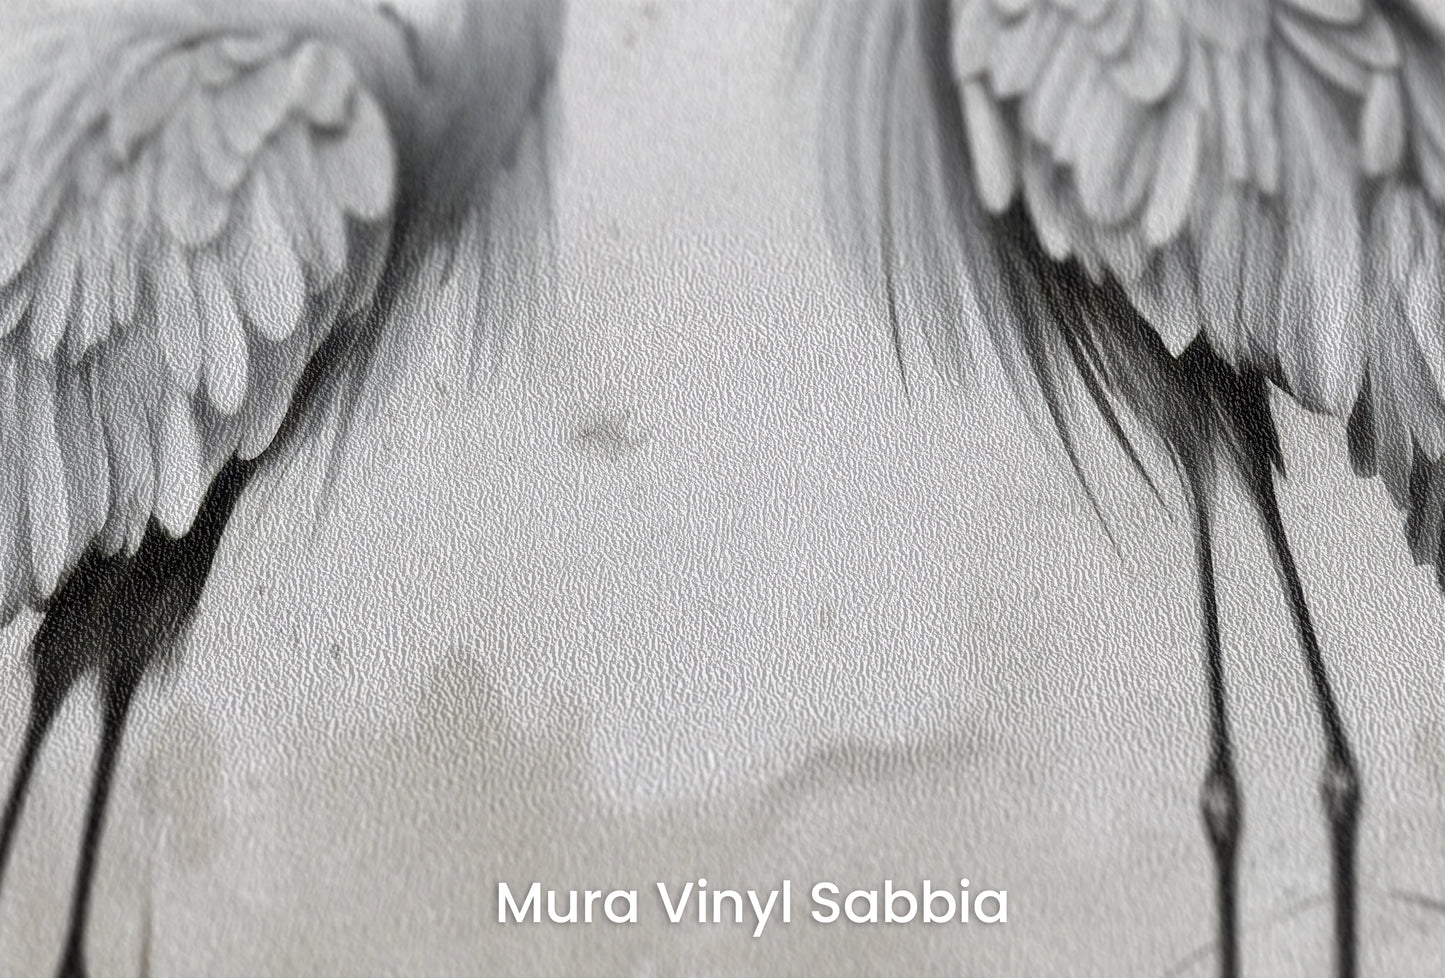 Zbliżenie na artystyczną fototapetę o nazwie Lunar Duo na podłożu Mura Vinyl Sabbia struktura grubego ziarna piasku.